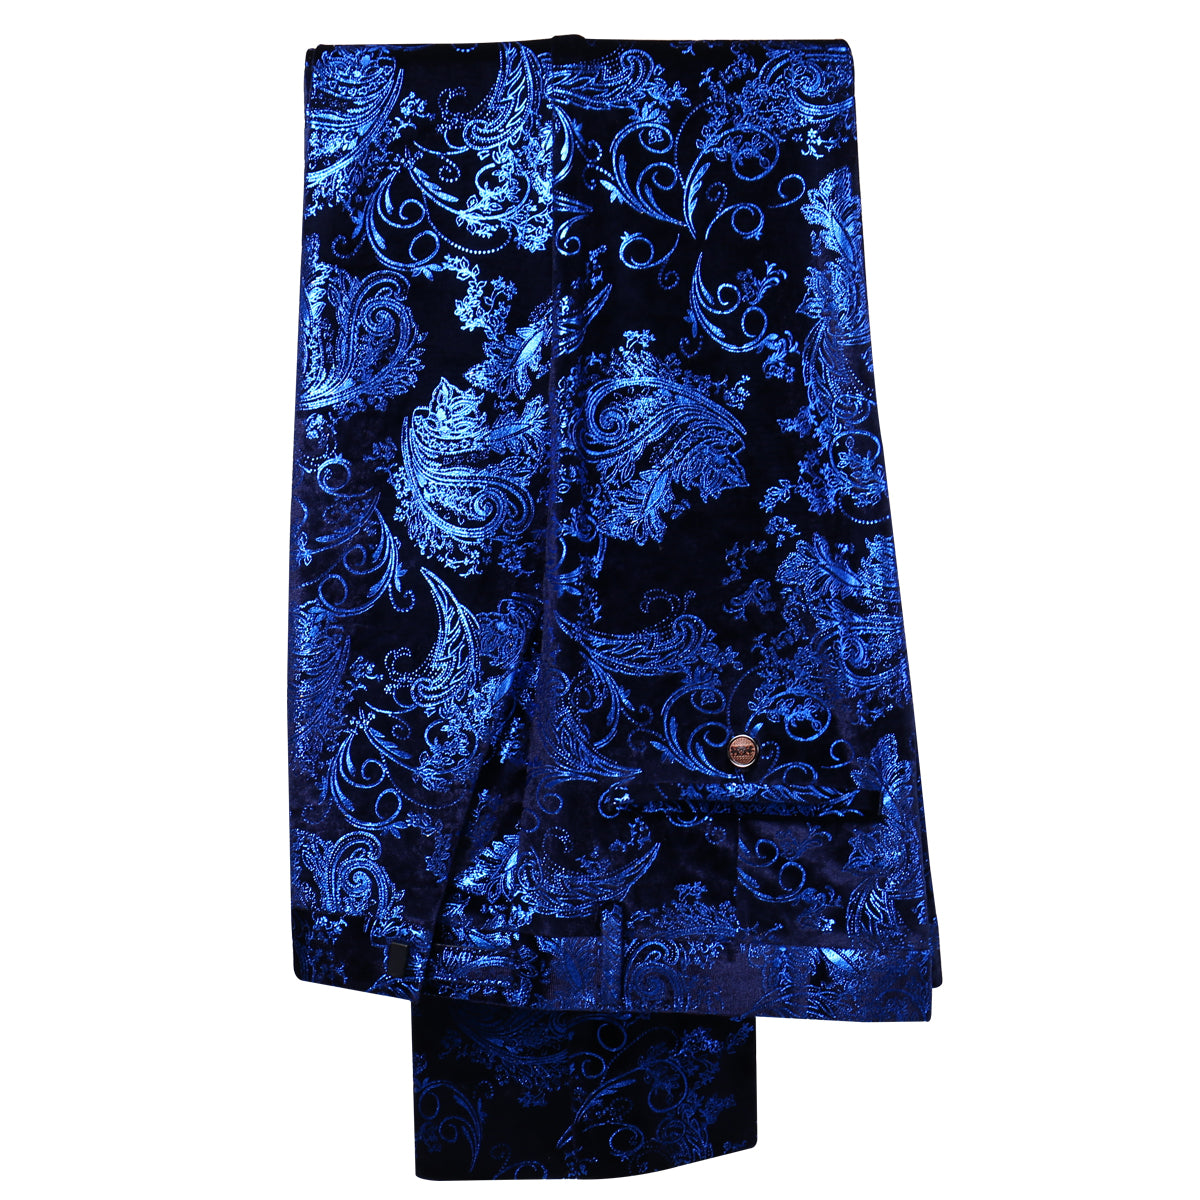 2-Piece Slim Fit Digital Print Blue Suit